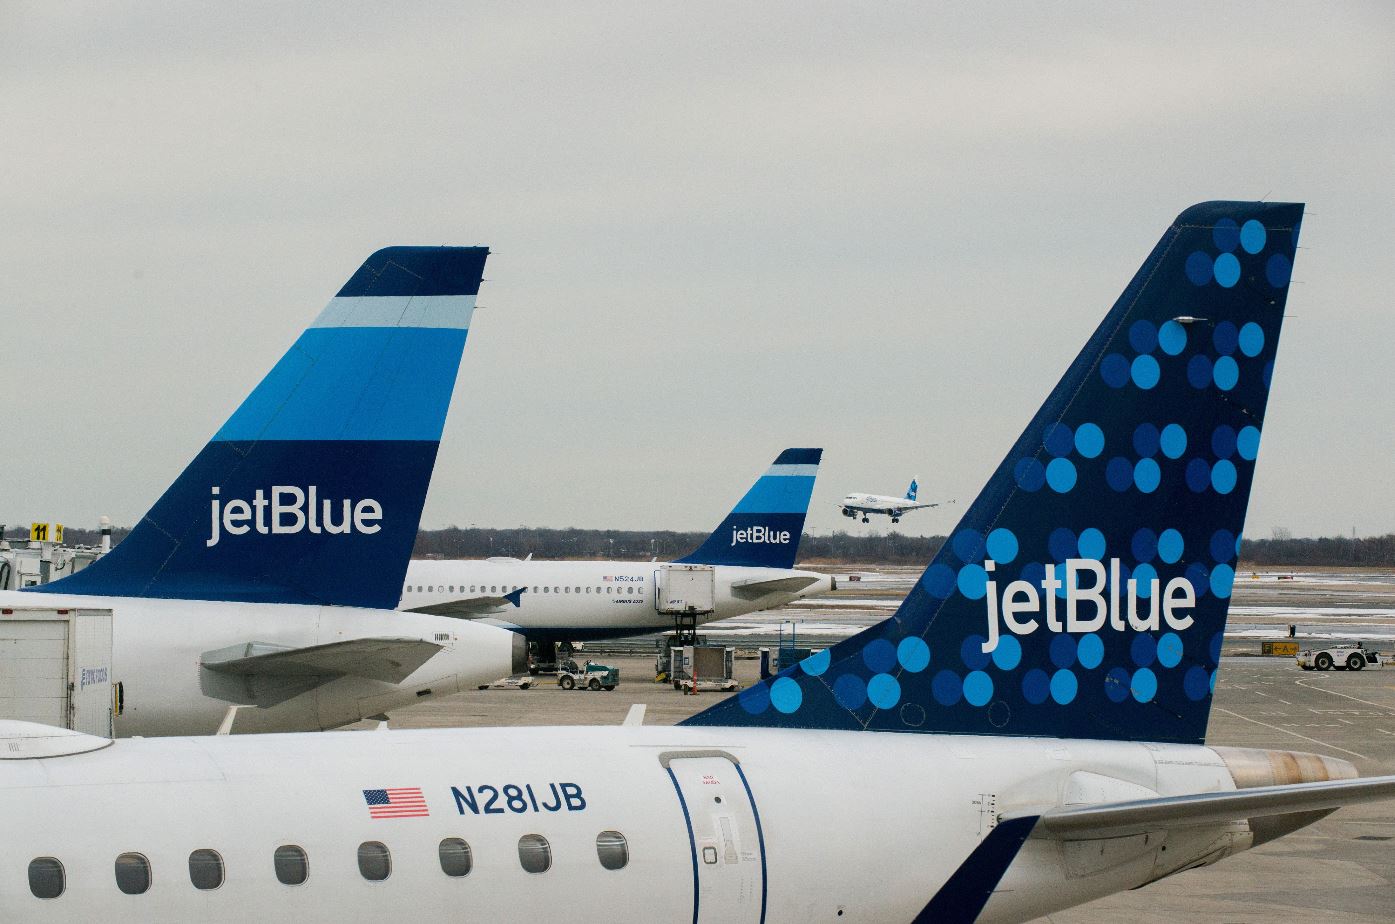     La compagnie américaine JetBlue Airways débarque dans un mois

